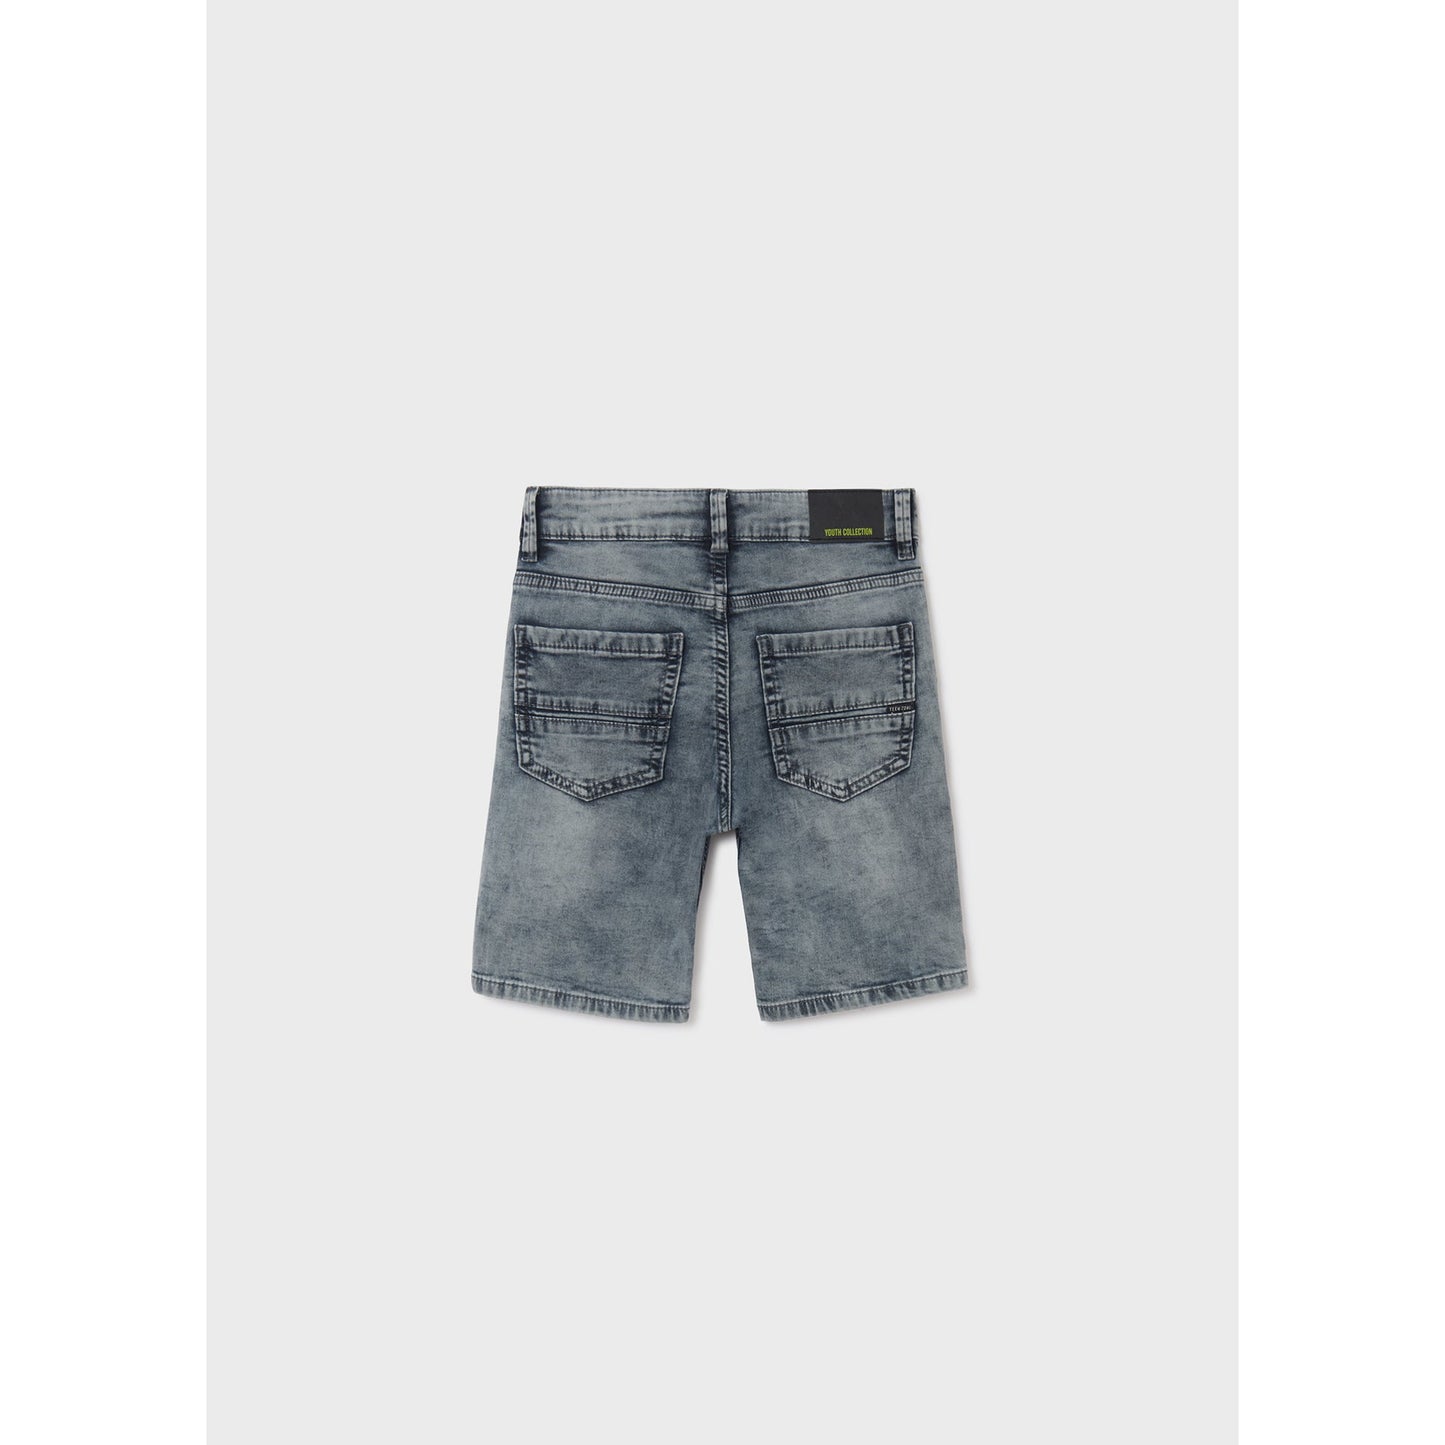 Nukutavake Bermuda Soft Denim Shorts _Grey 6214-70